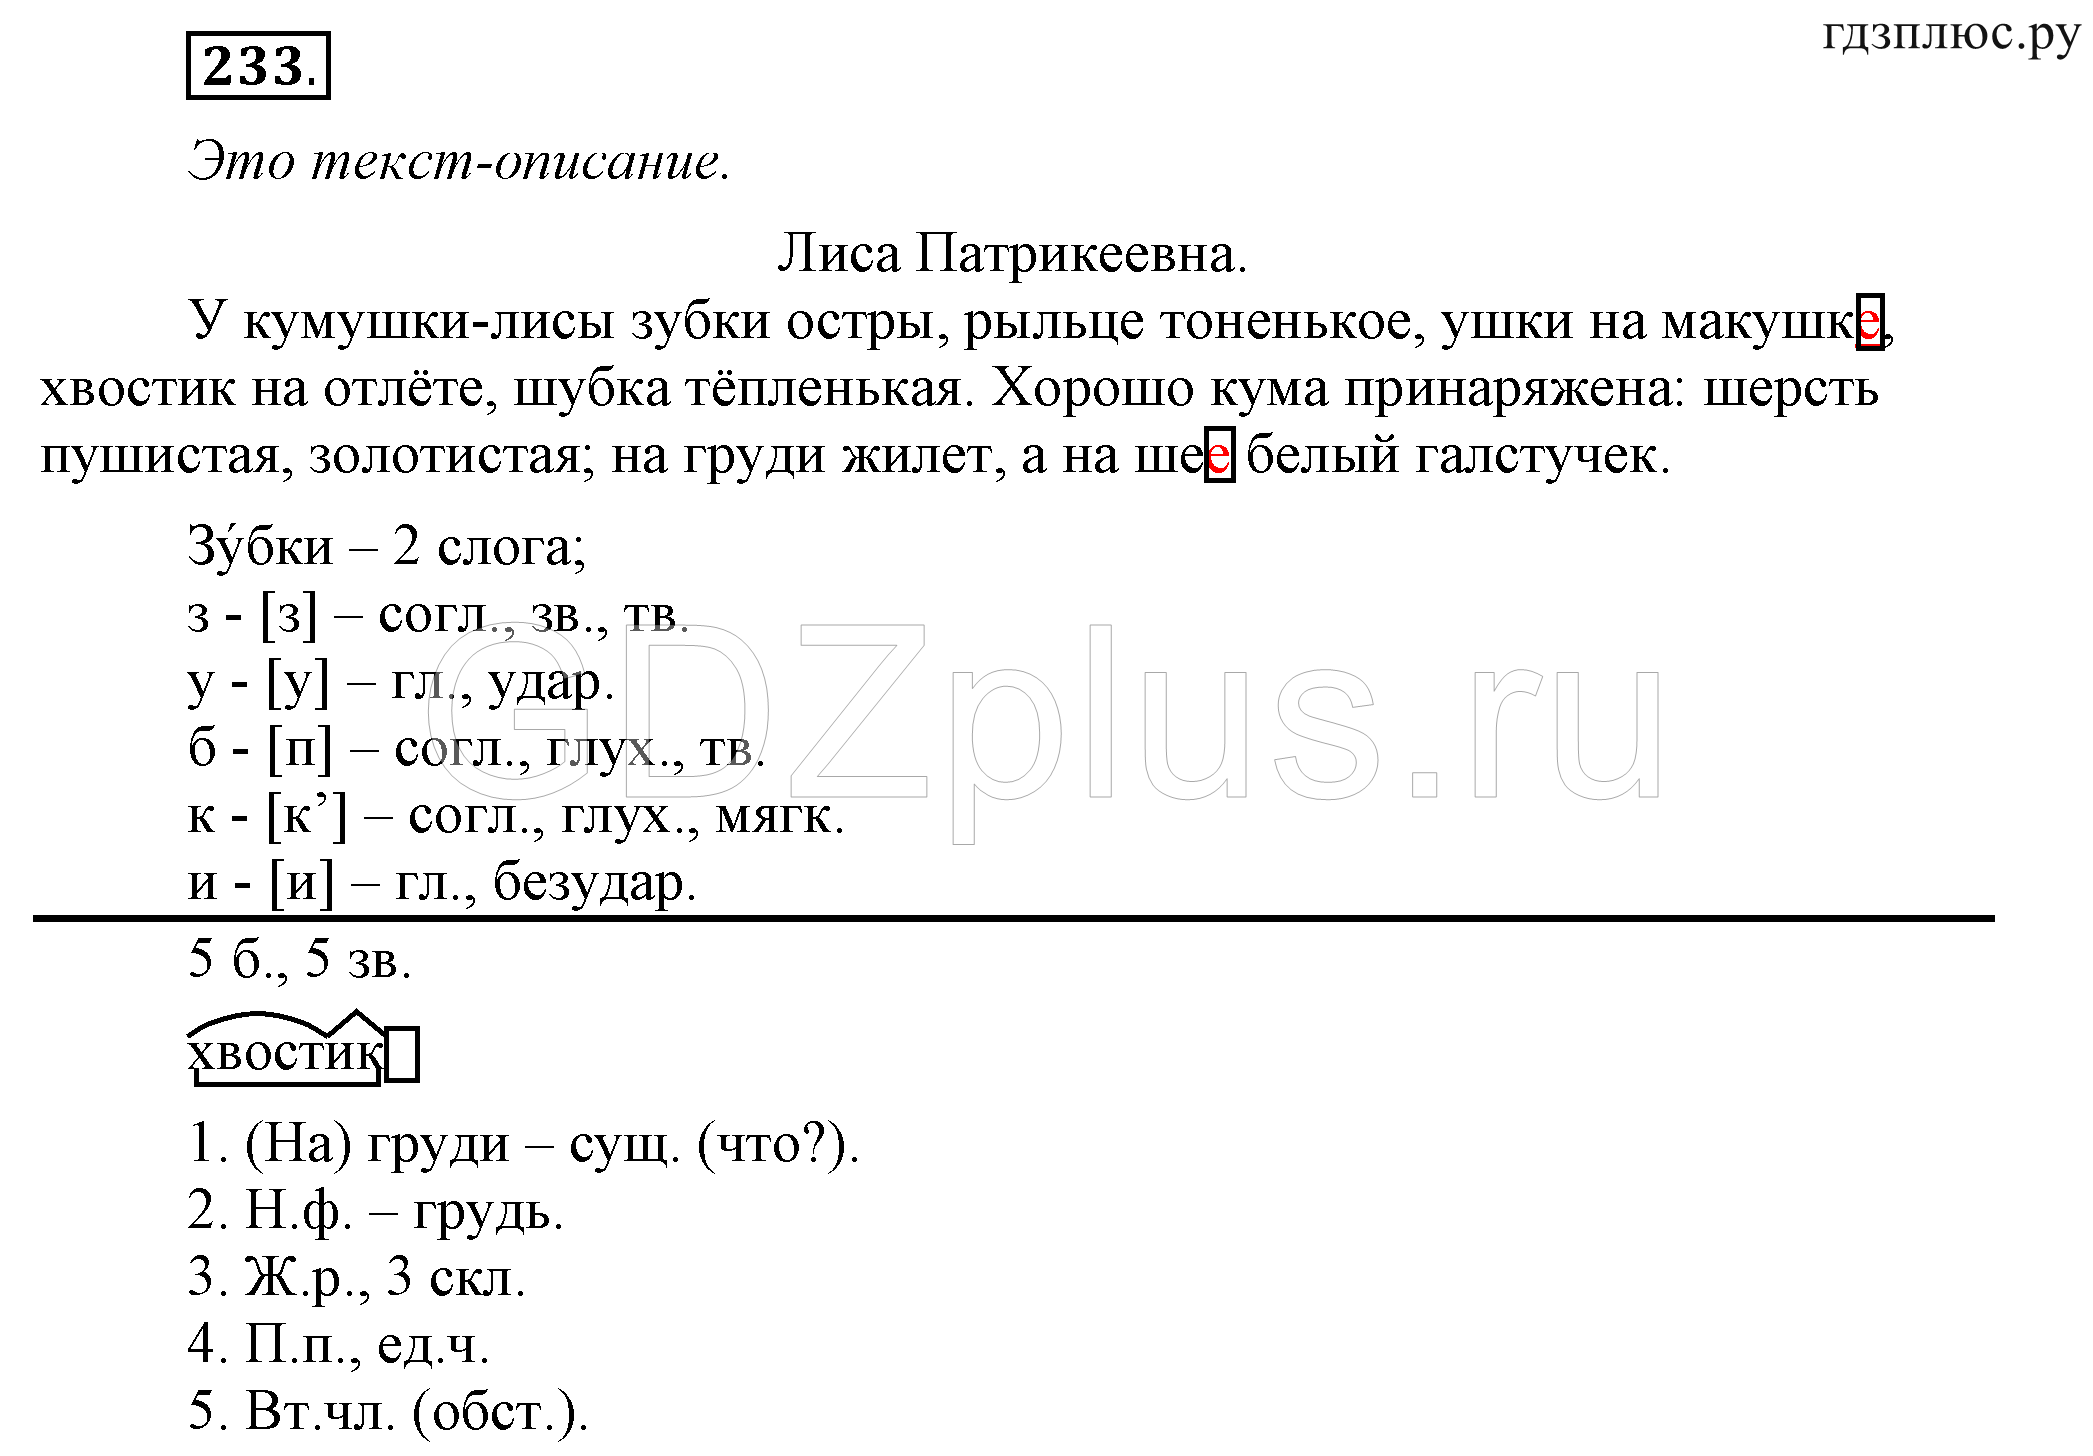 Телеграмма русский язык 4 класс фото 100